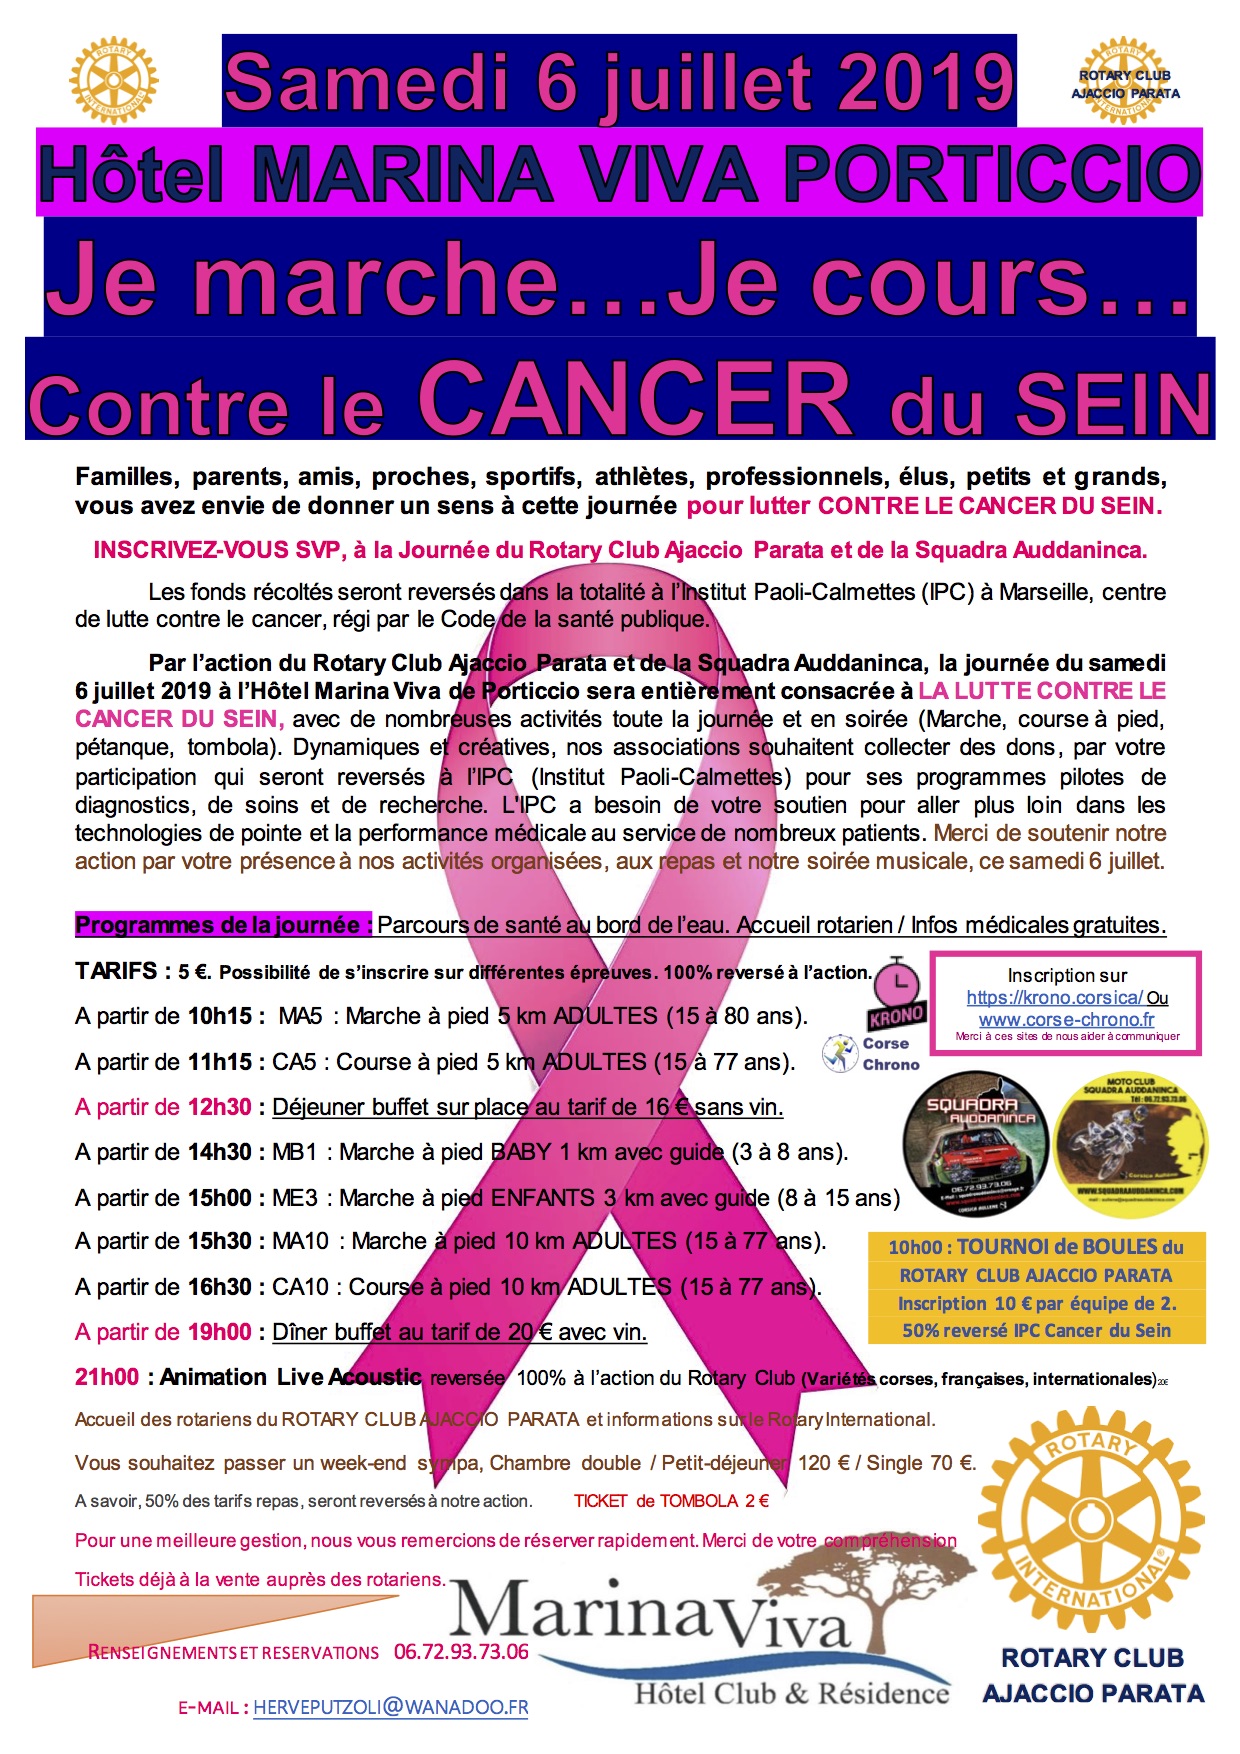 Une course contre le cancer du sein le samedi 6 juillet 2019 à Porticcio